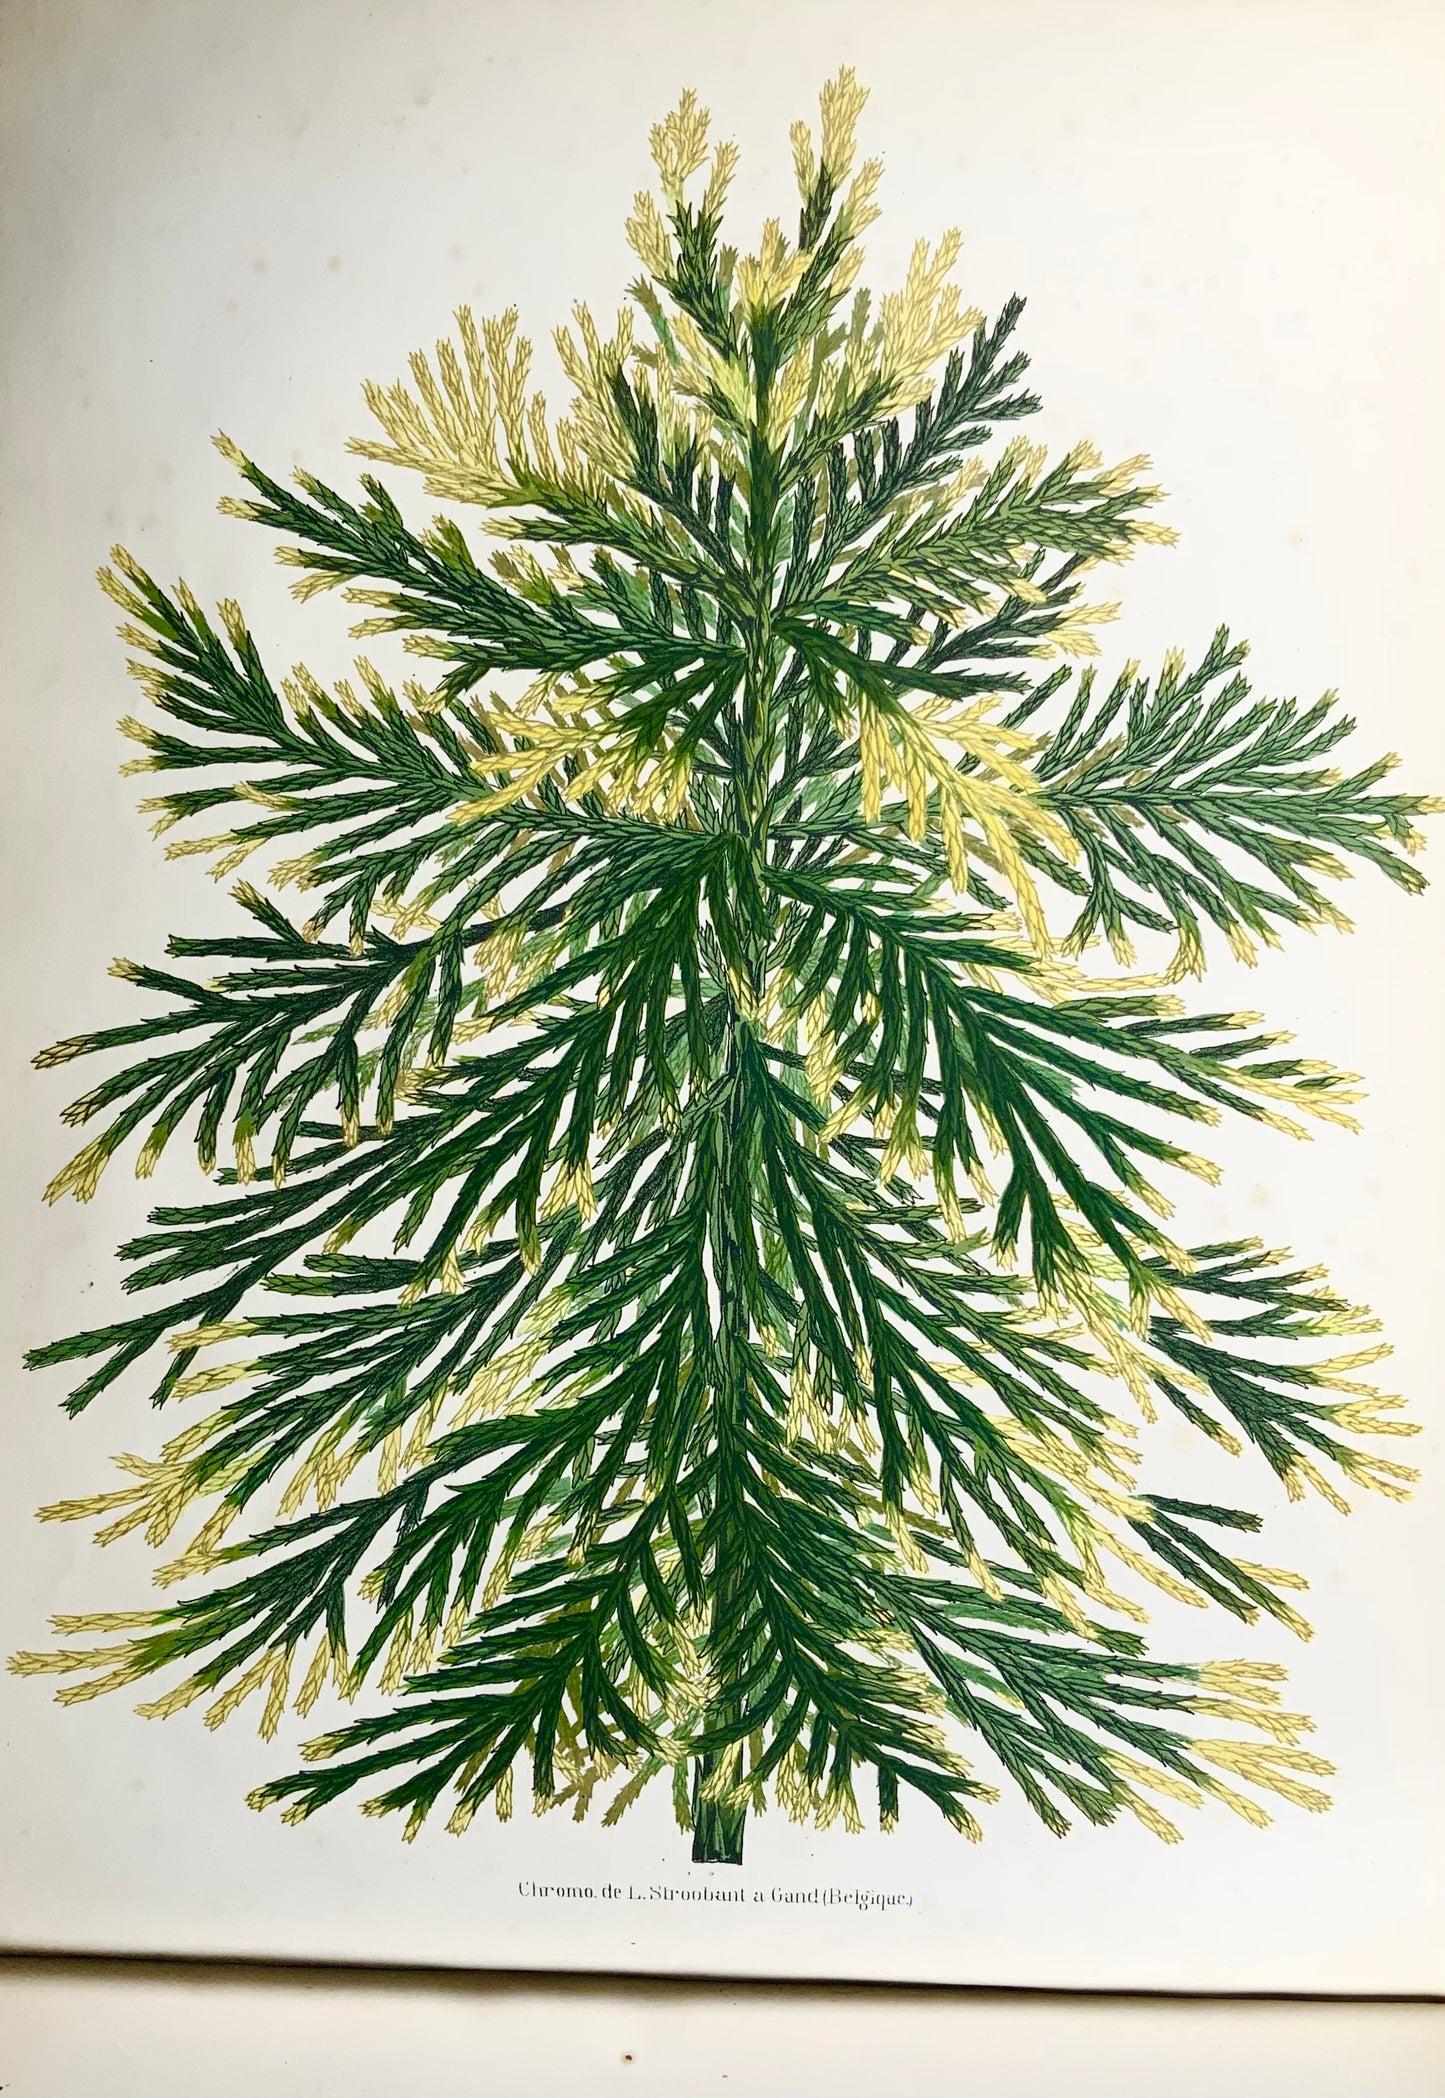 1873-74 Dallière, 2 volumi in folio oblunghi su piante variegate, 60 tavole pregiate, edizione unica di botanica